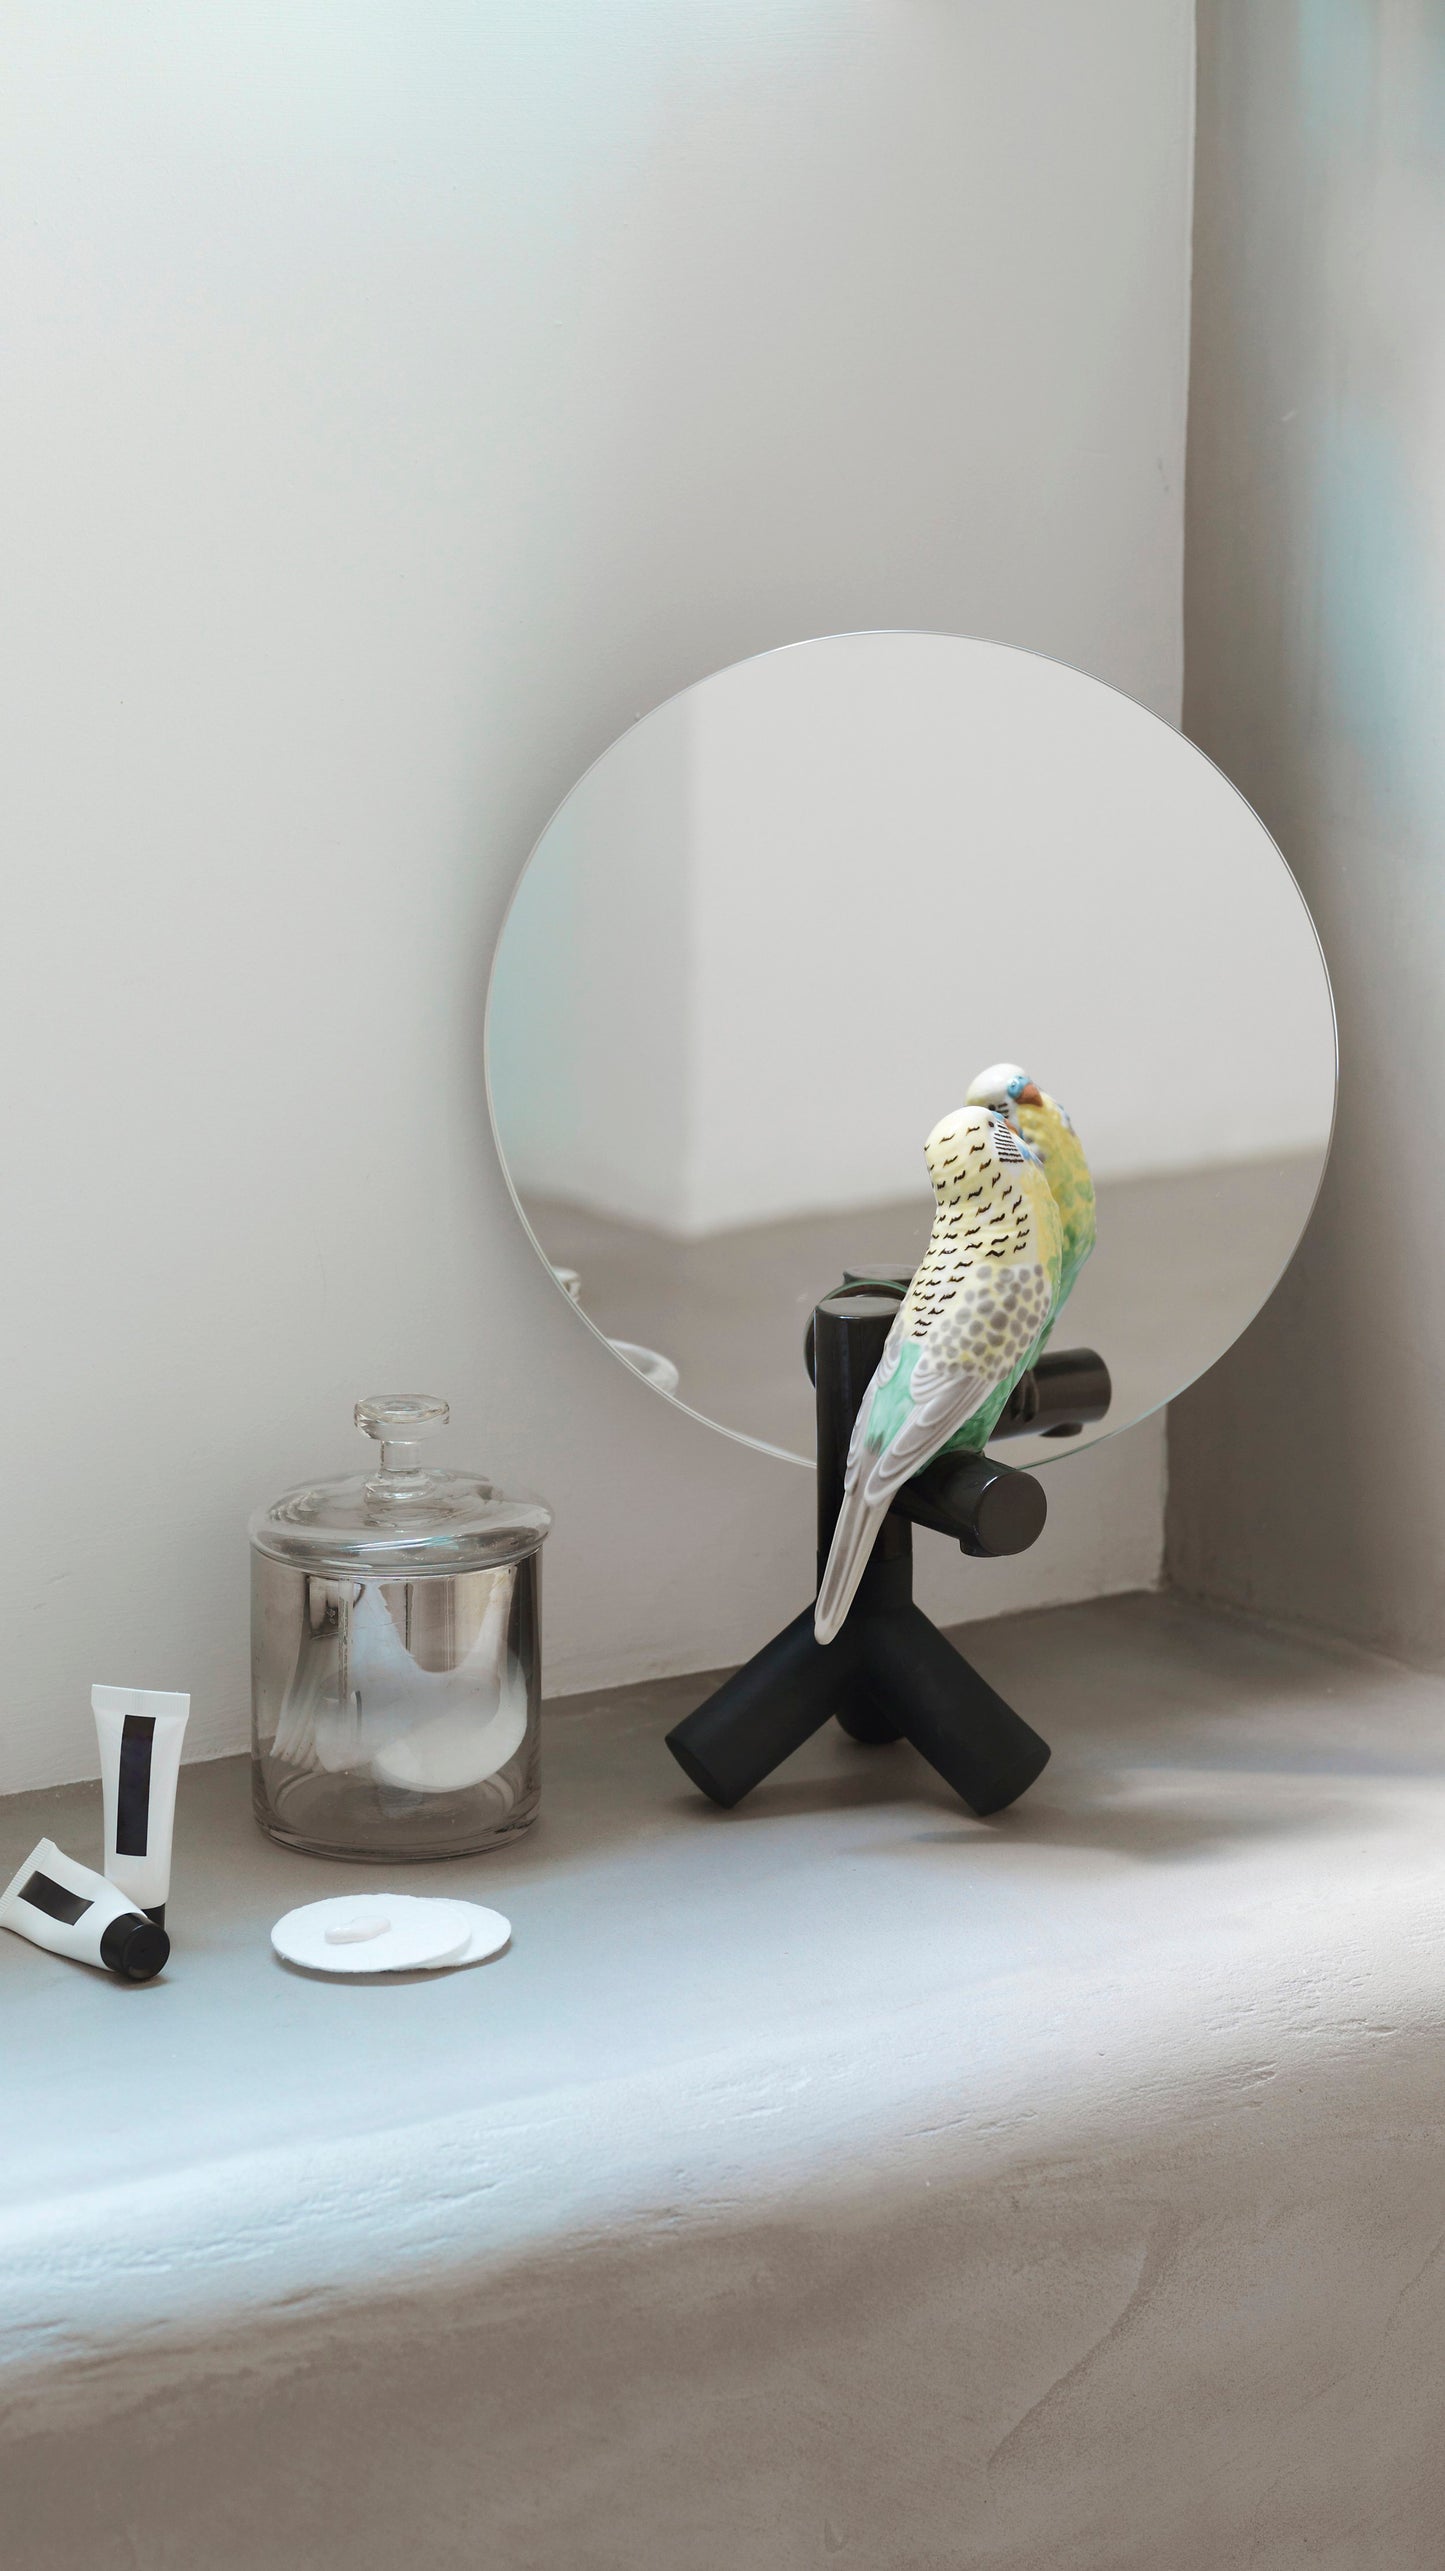 Parrot Vanity Mirror - FormFluent